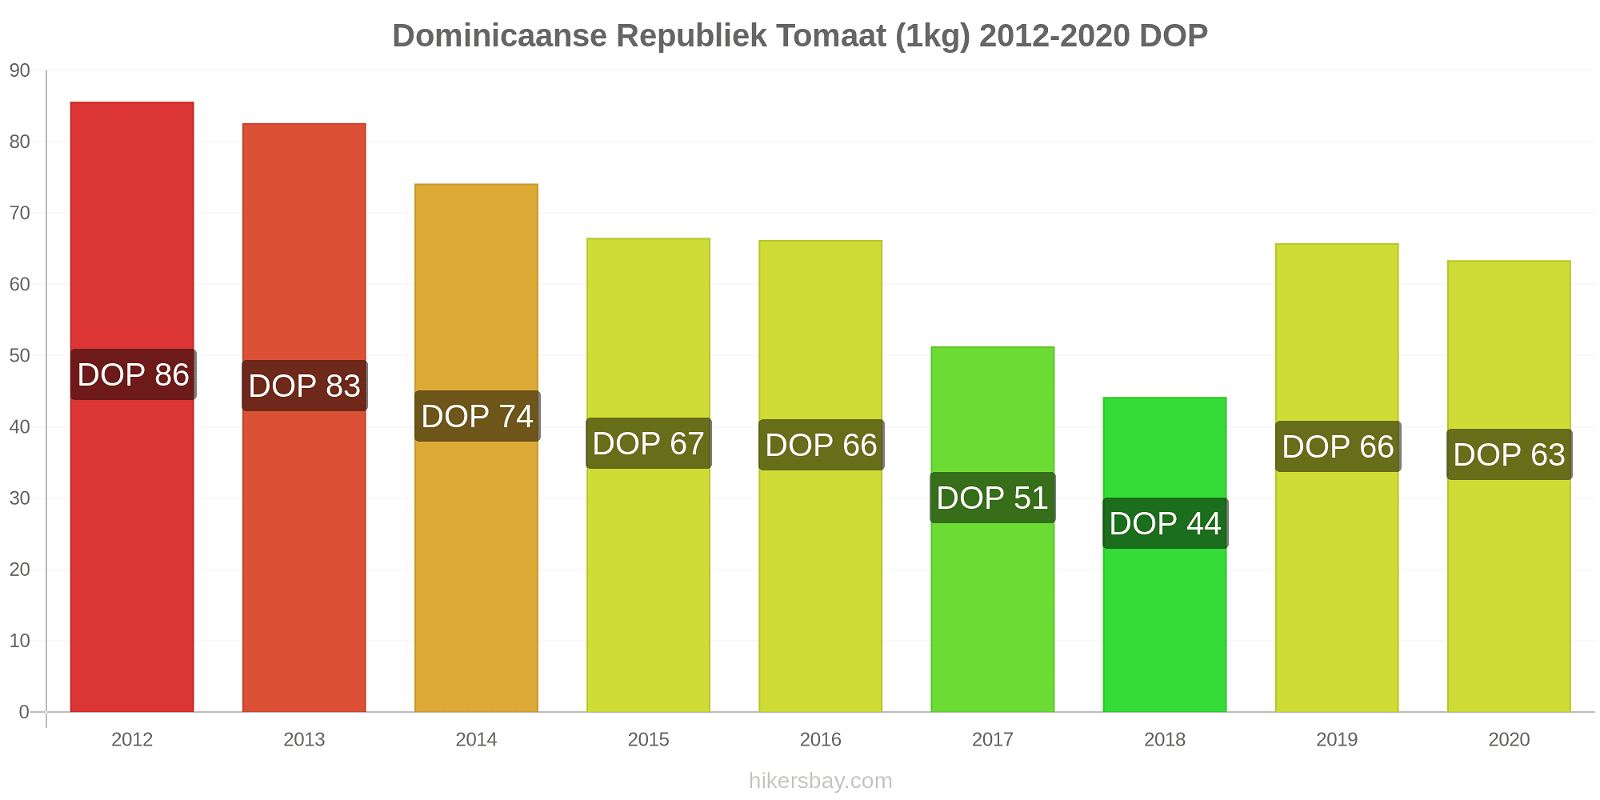 Dominicaanse Republiek prijswijzigingen Tomaat (1kg) hikersbay.com